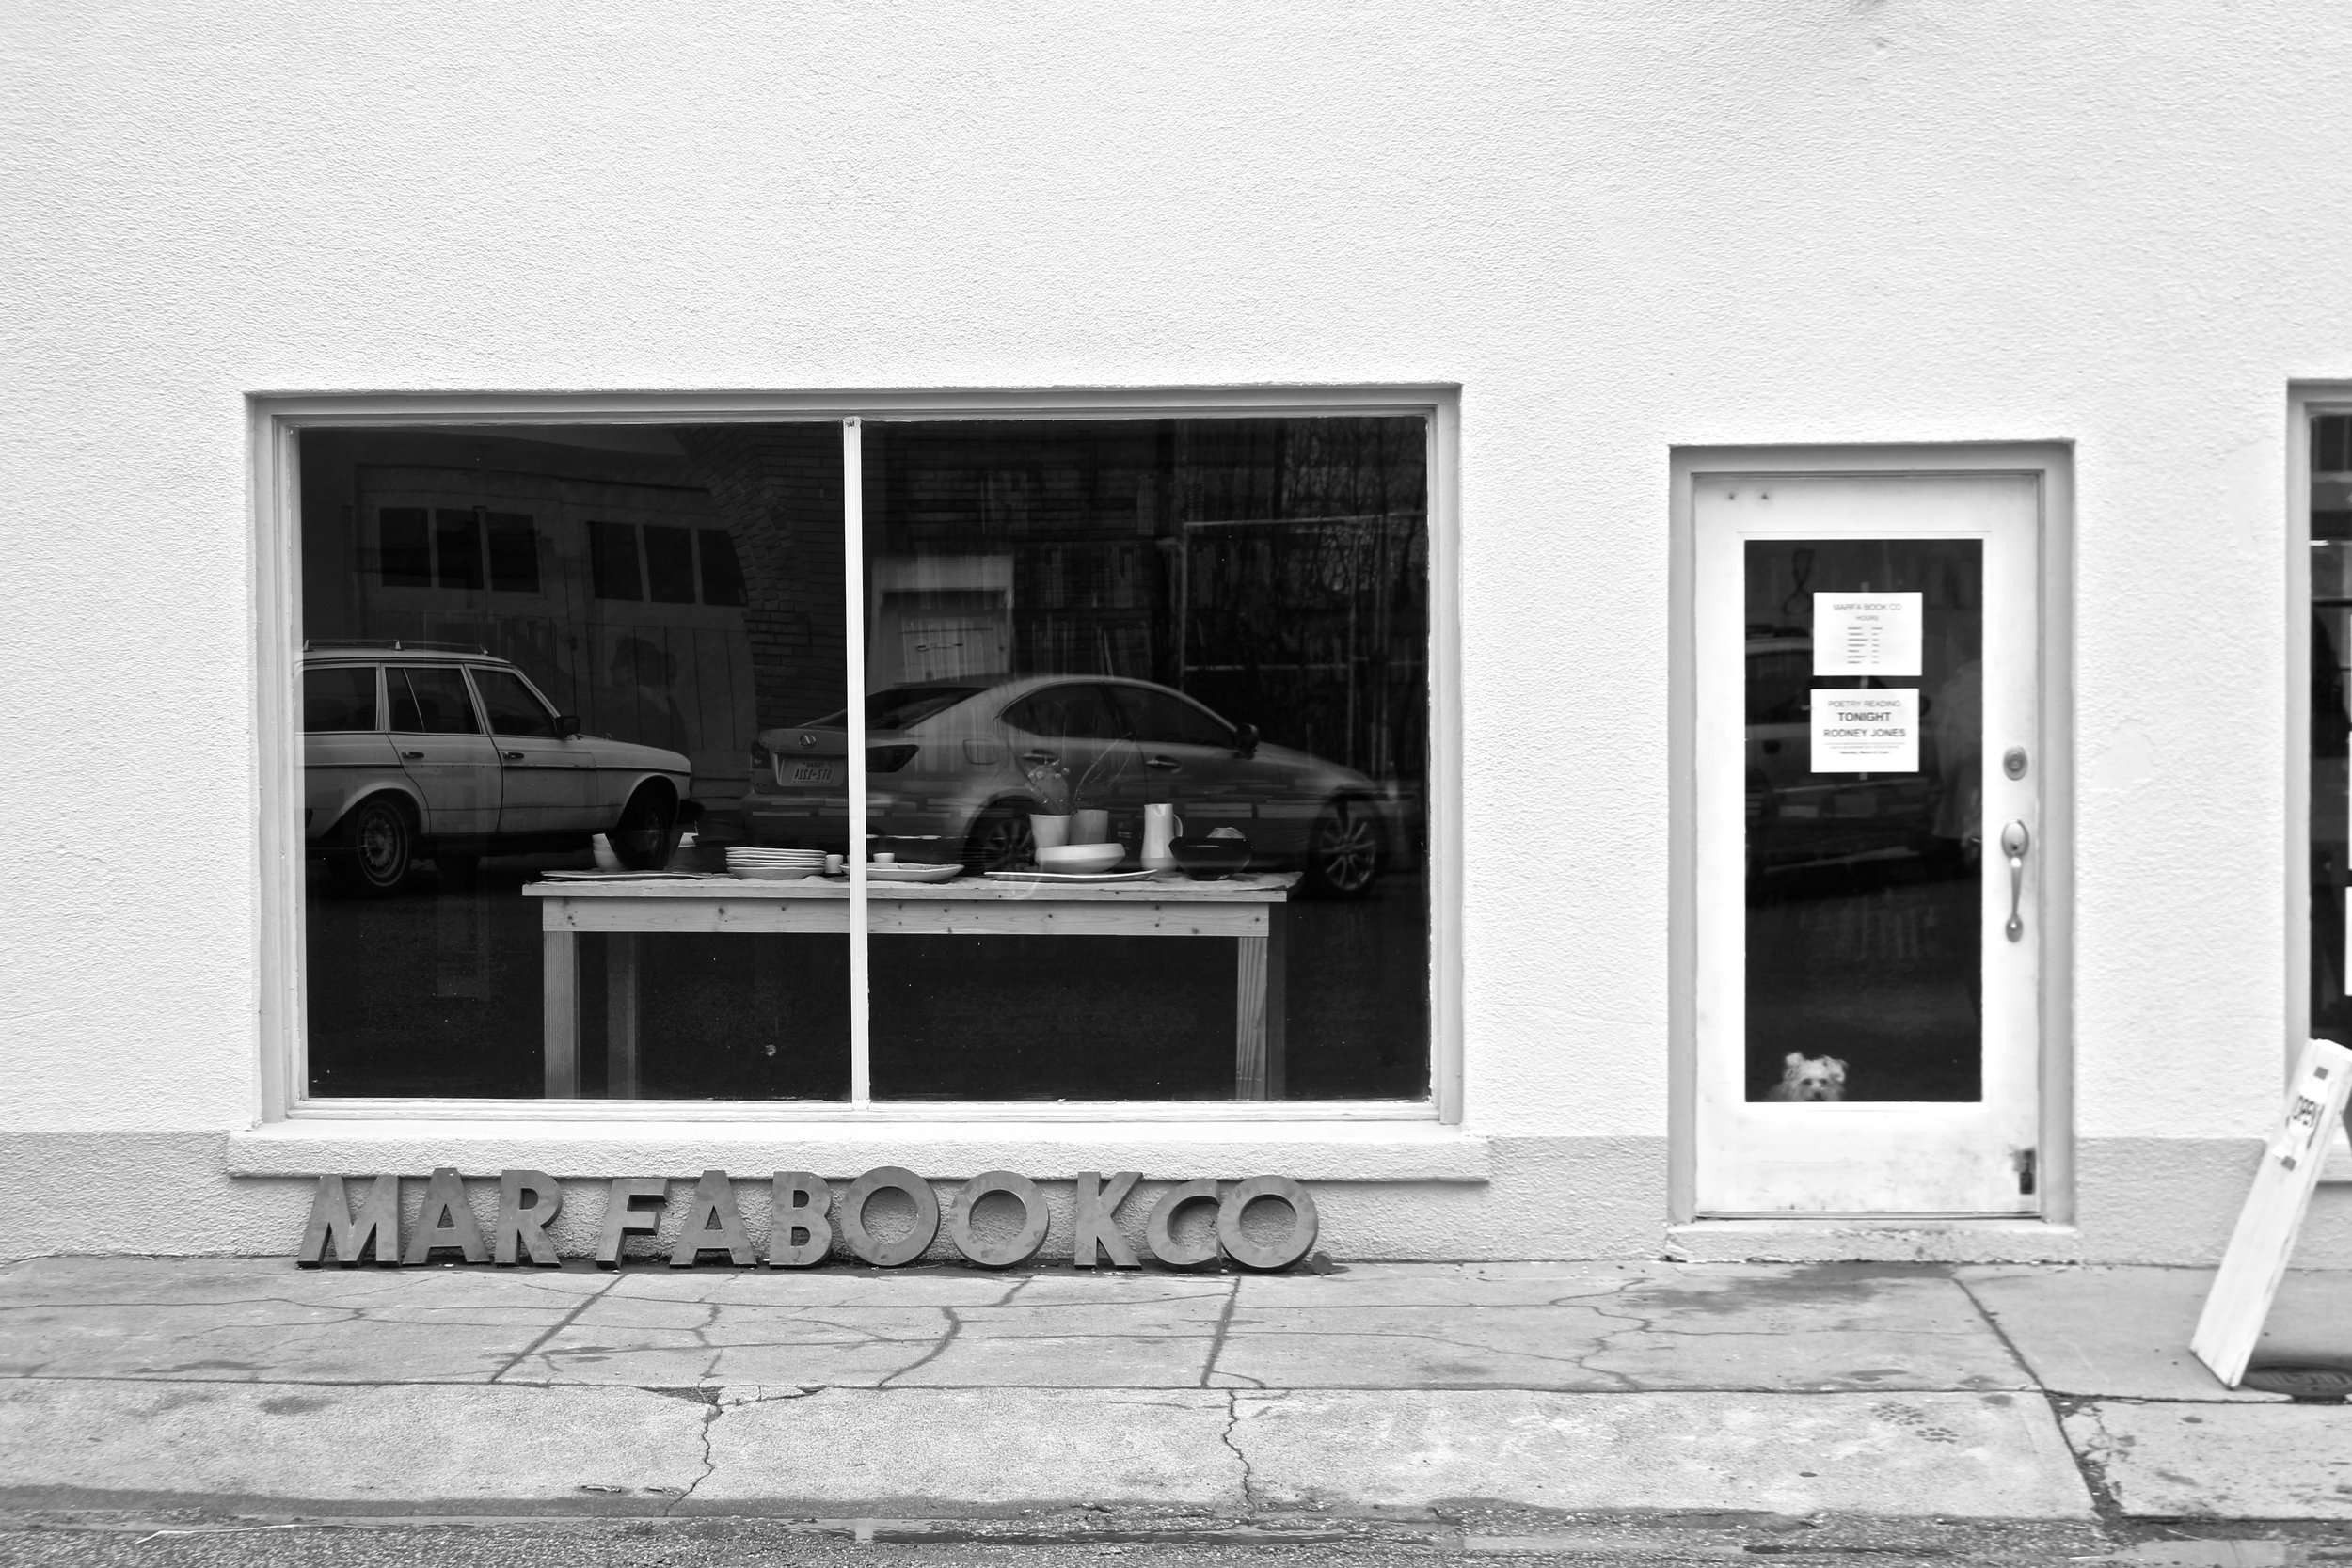  Marfa Book Company, Marfa, Texas. 